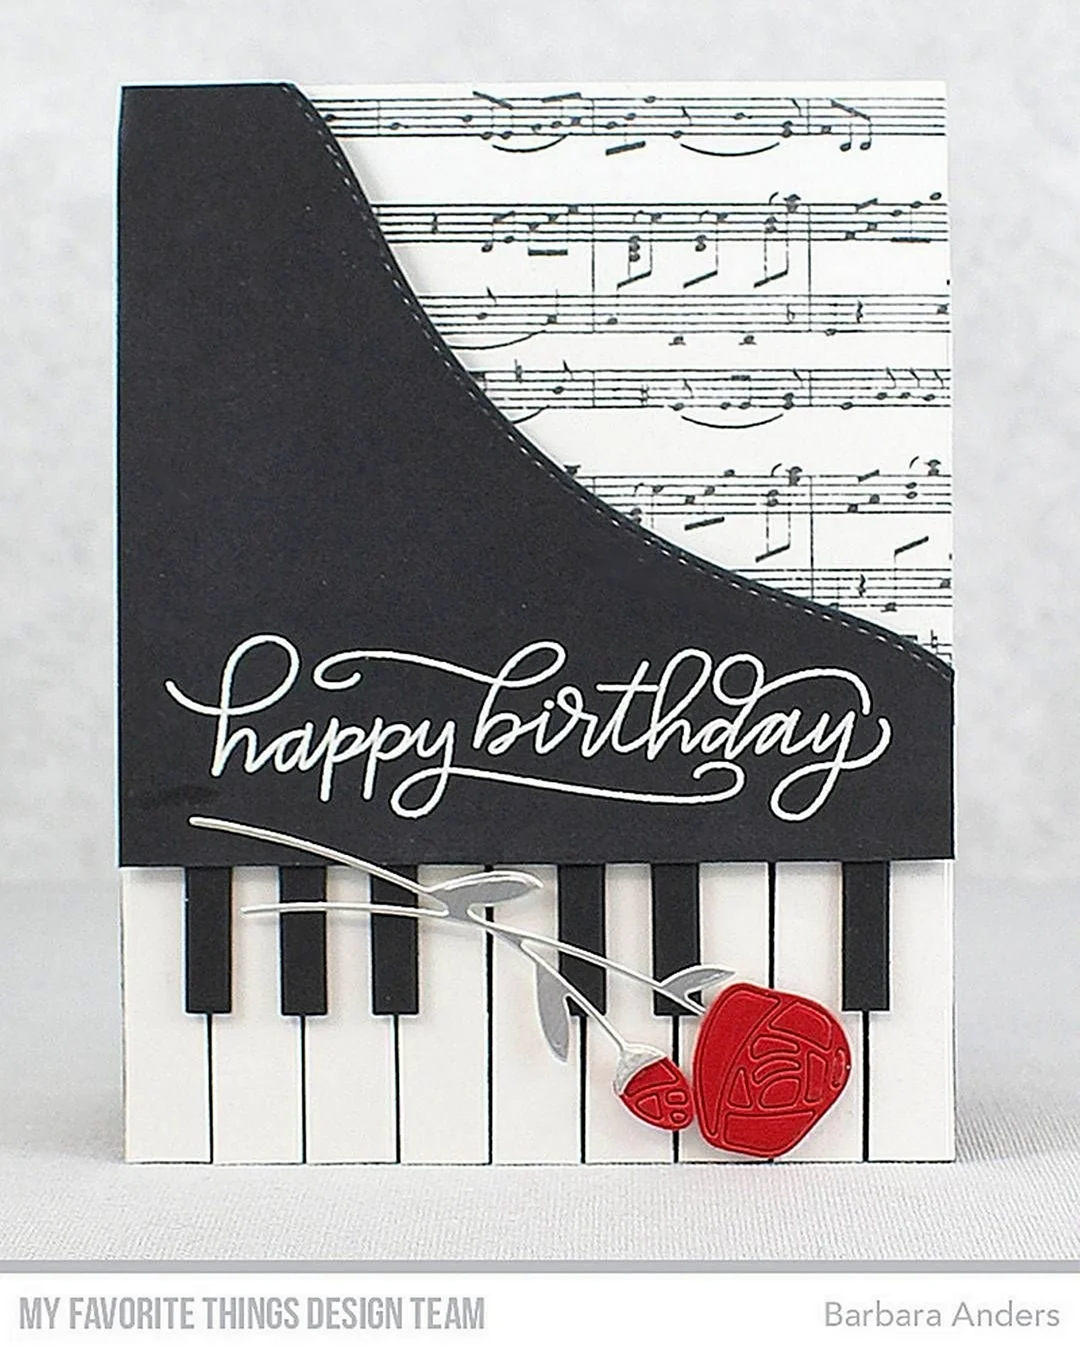 Поздравление пианисту с днем рождения. Красивая картинка